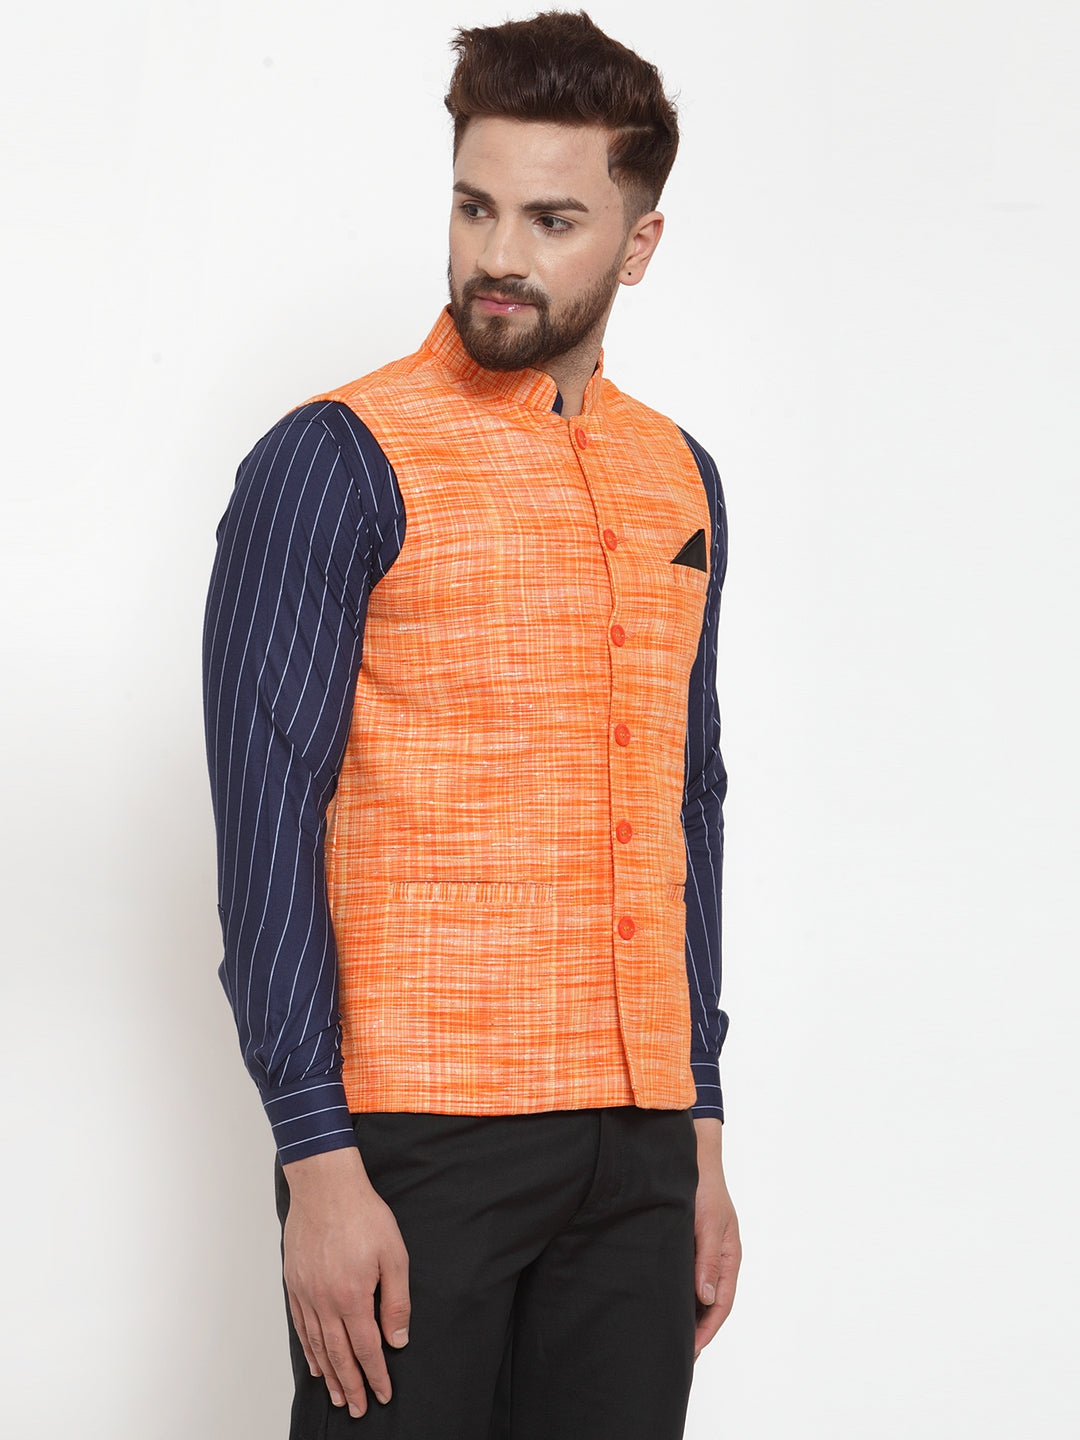 KLOTTHE Orange Pure Cotton Woven Design Nehru Jacket